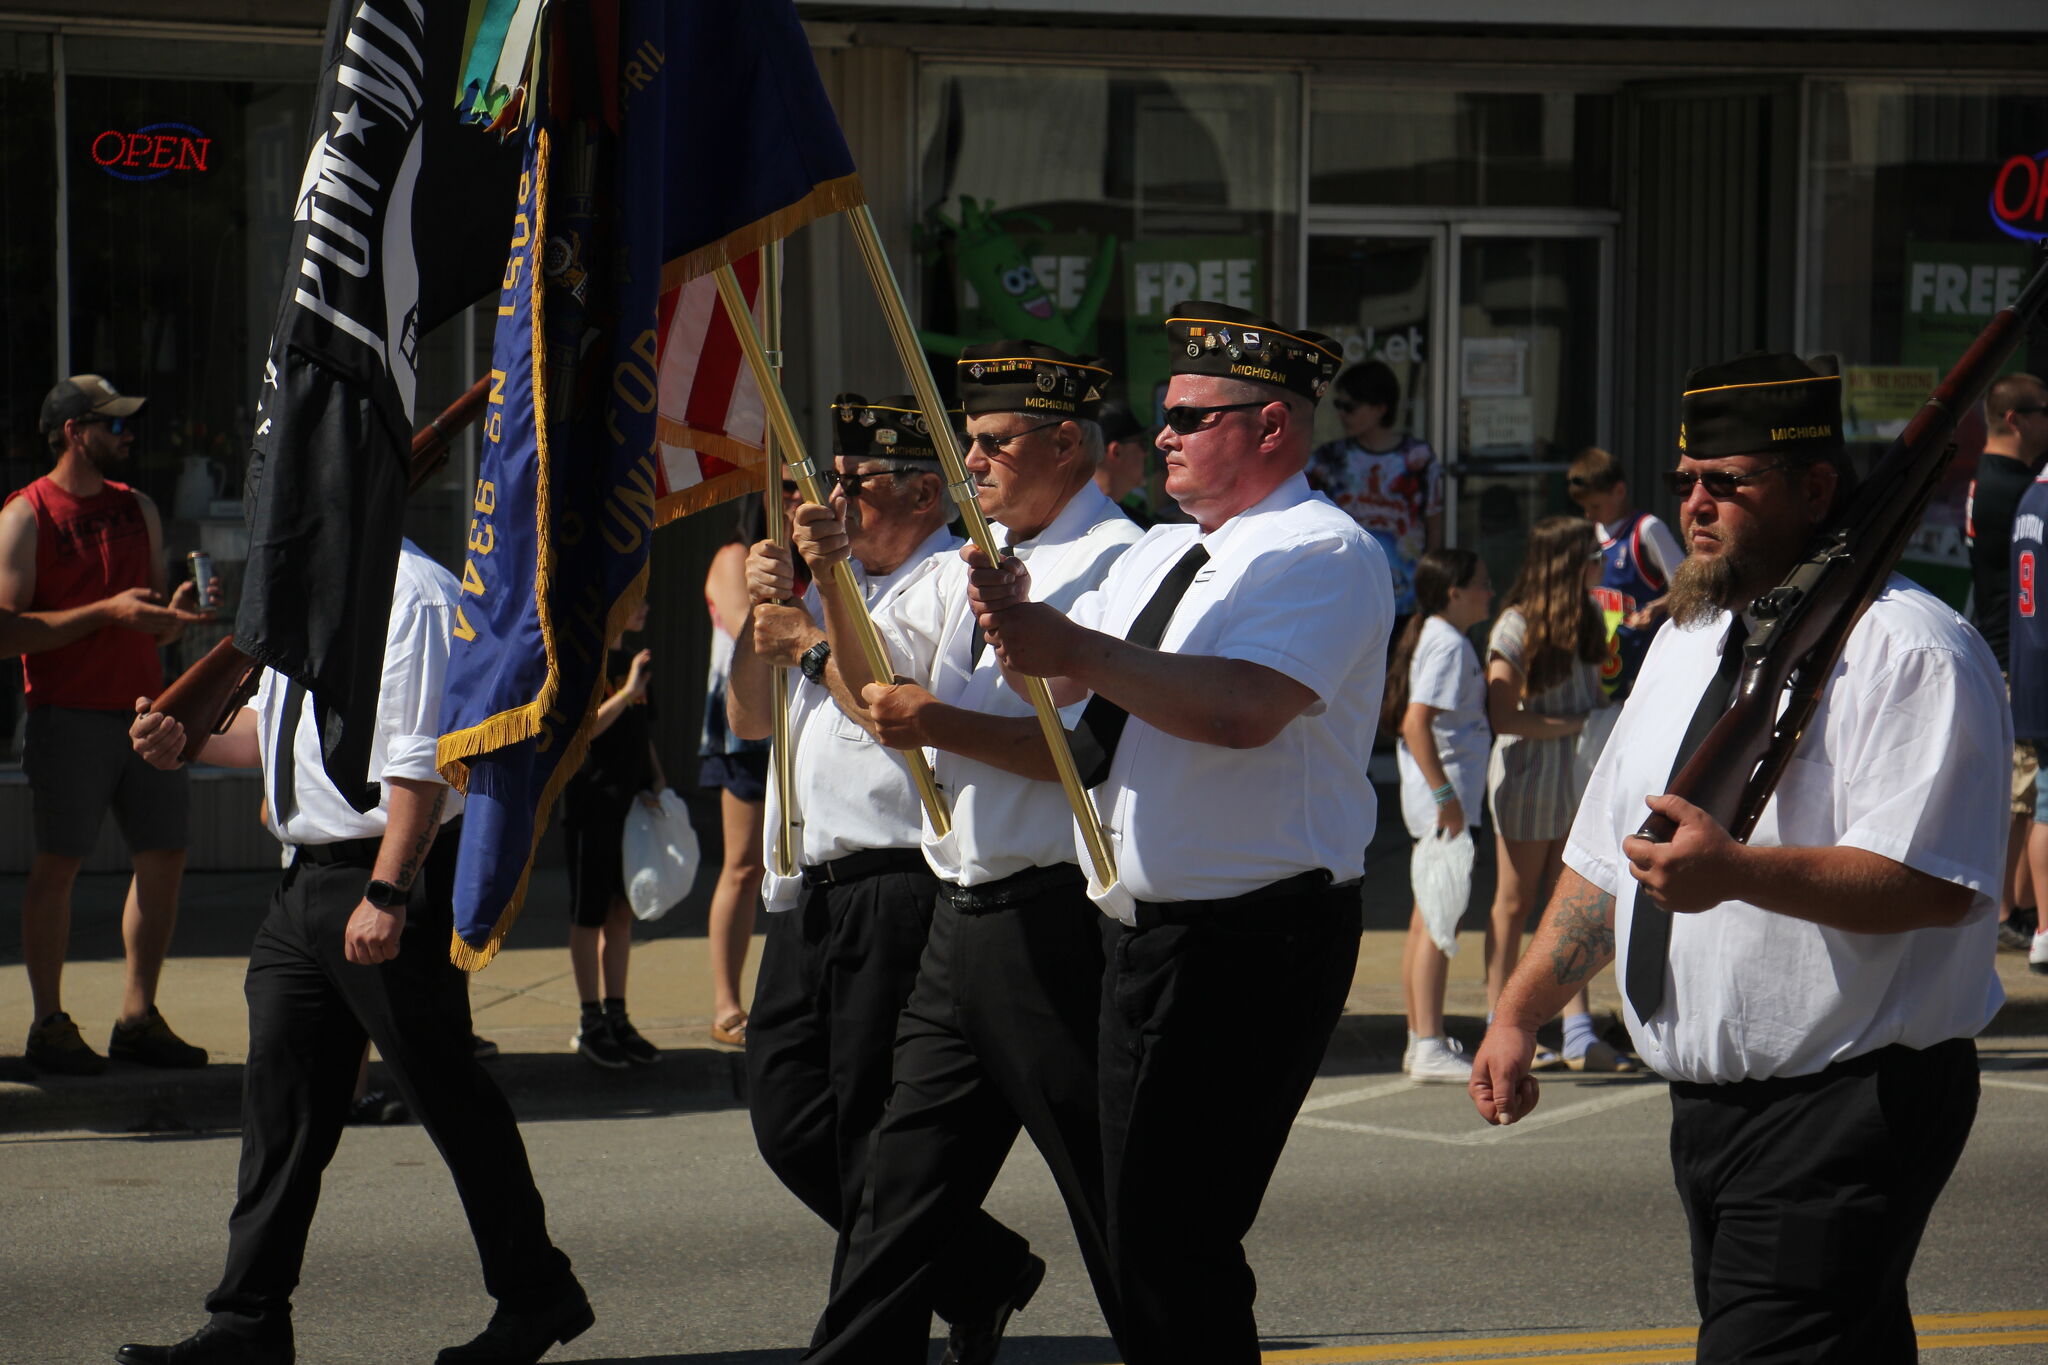 Patriotism shines at Bad Axe Memorial Day parade